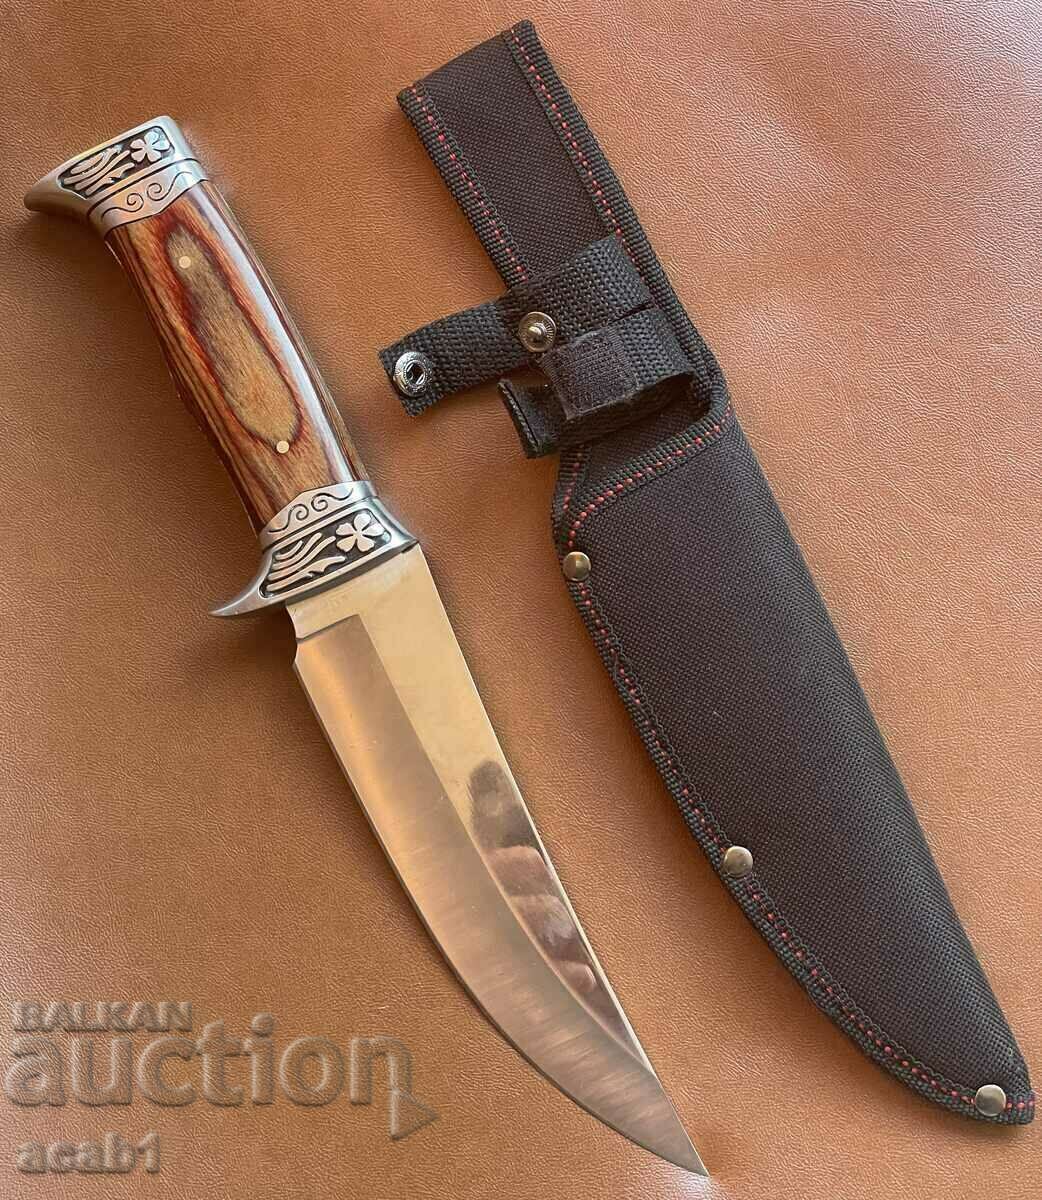 Hunting knife USA Columbia G59